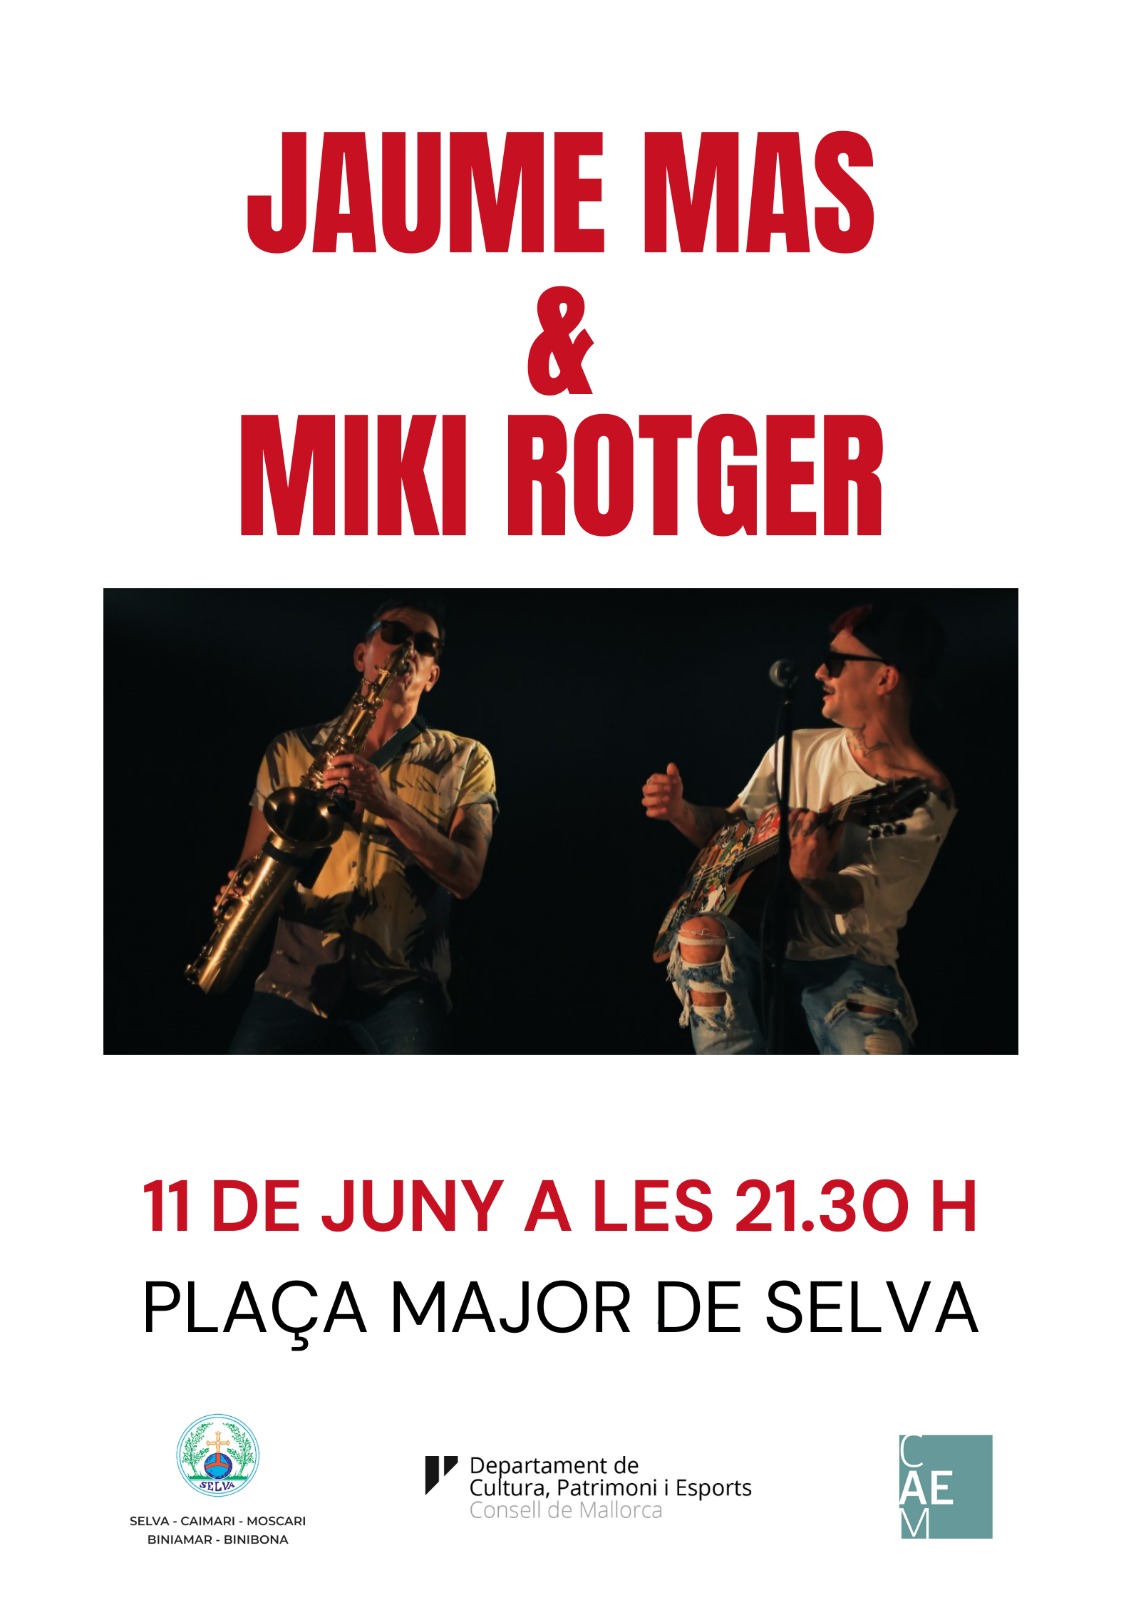 Jaume Mas & Miki Rotger